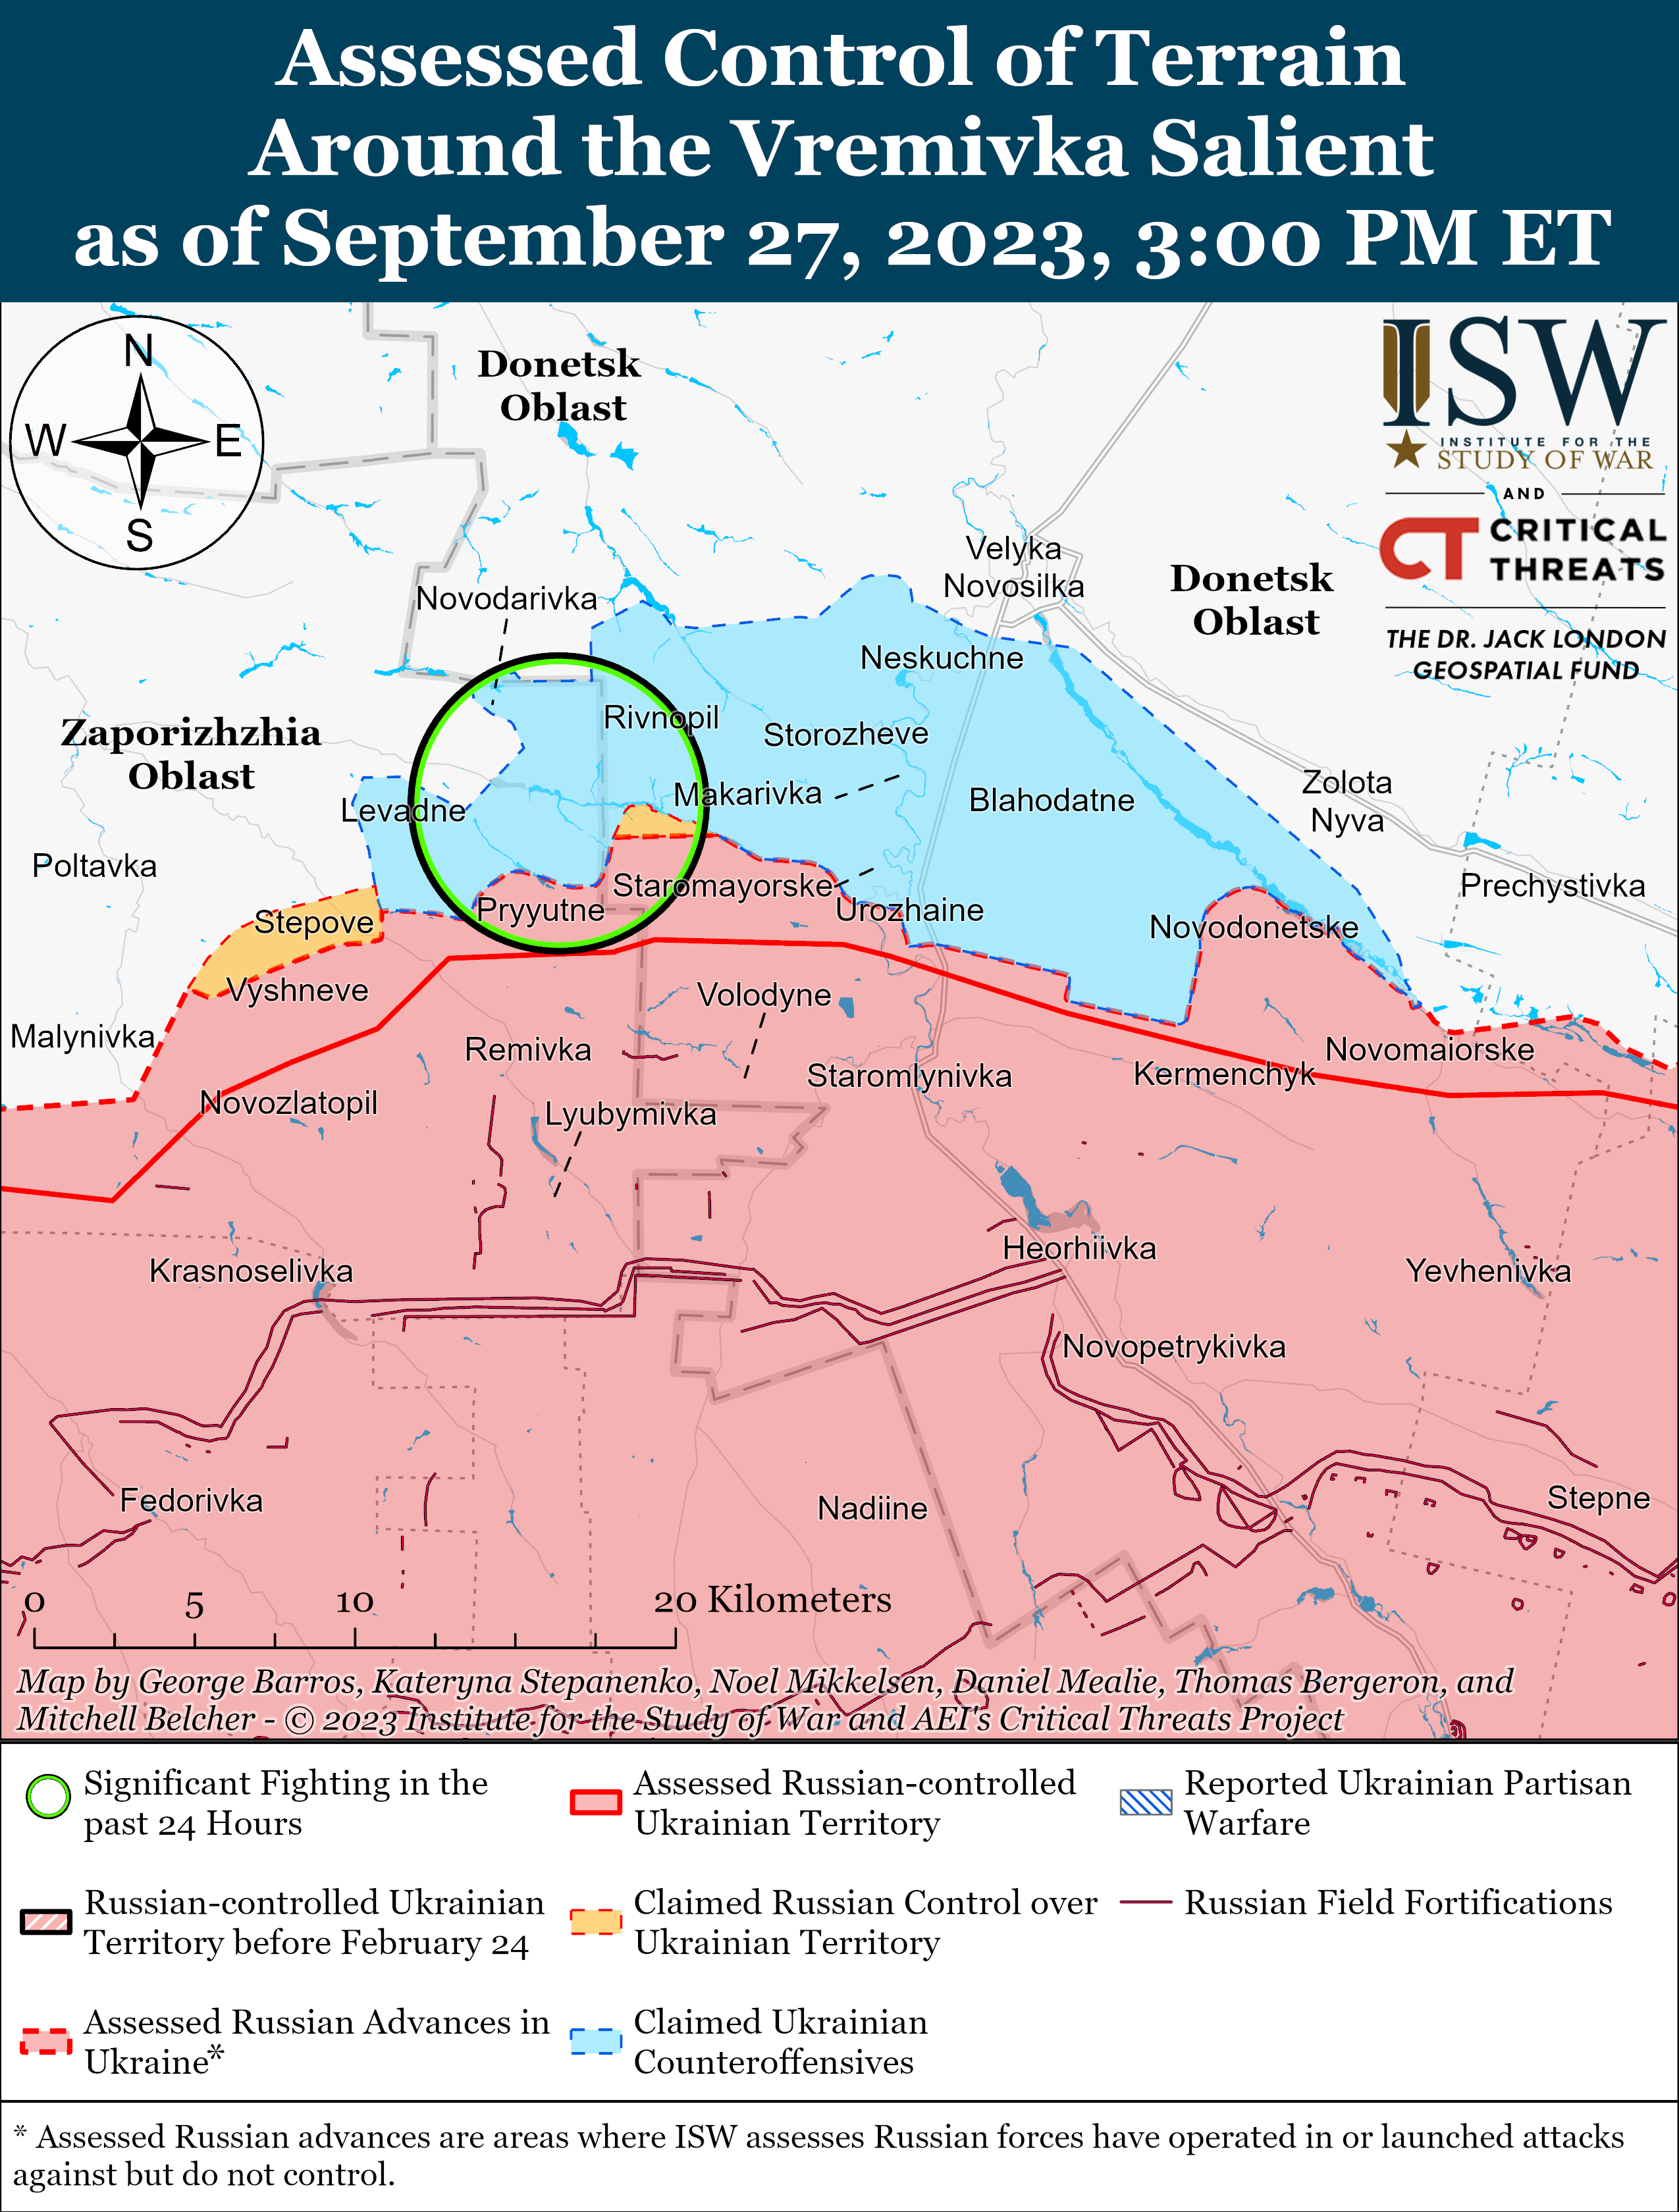 ВСУ, вероятно, совершили прорыв на линии Работино-Вербовое: карты боев ISW